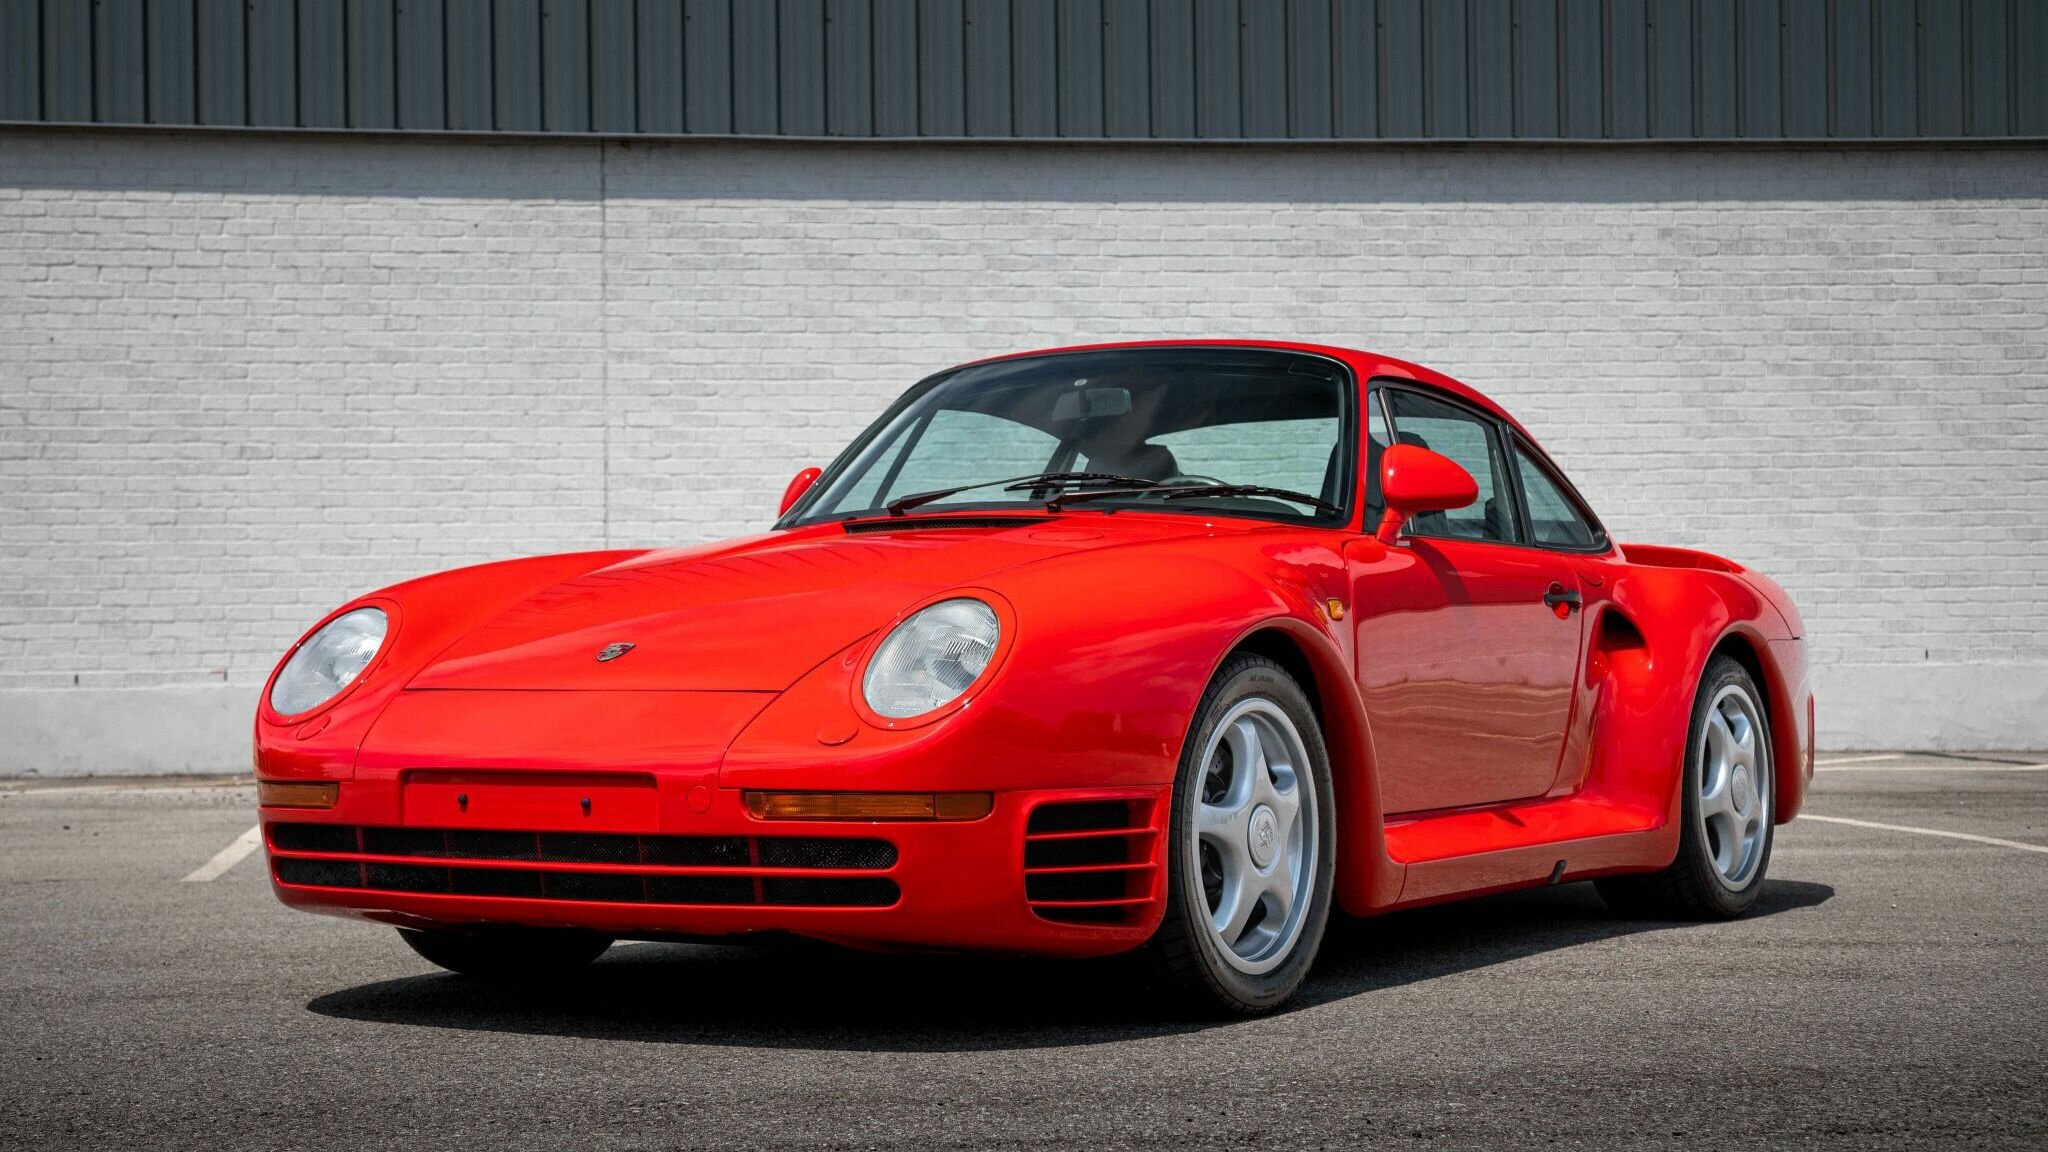 Редчайший Porsche 959 выставили на аукцион. За него уже предлагают 162 миллиона рублей